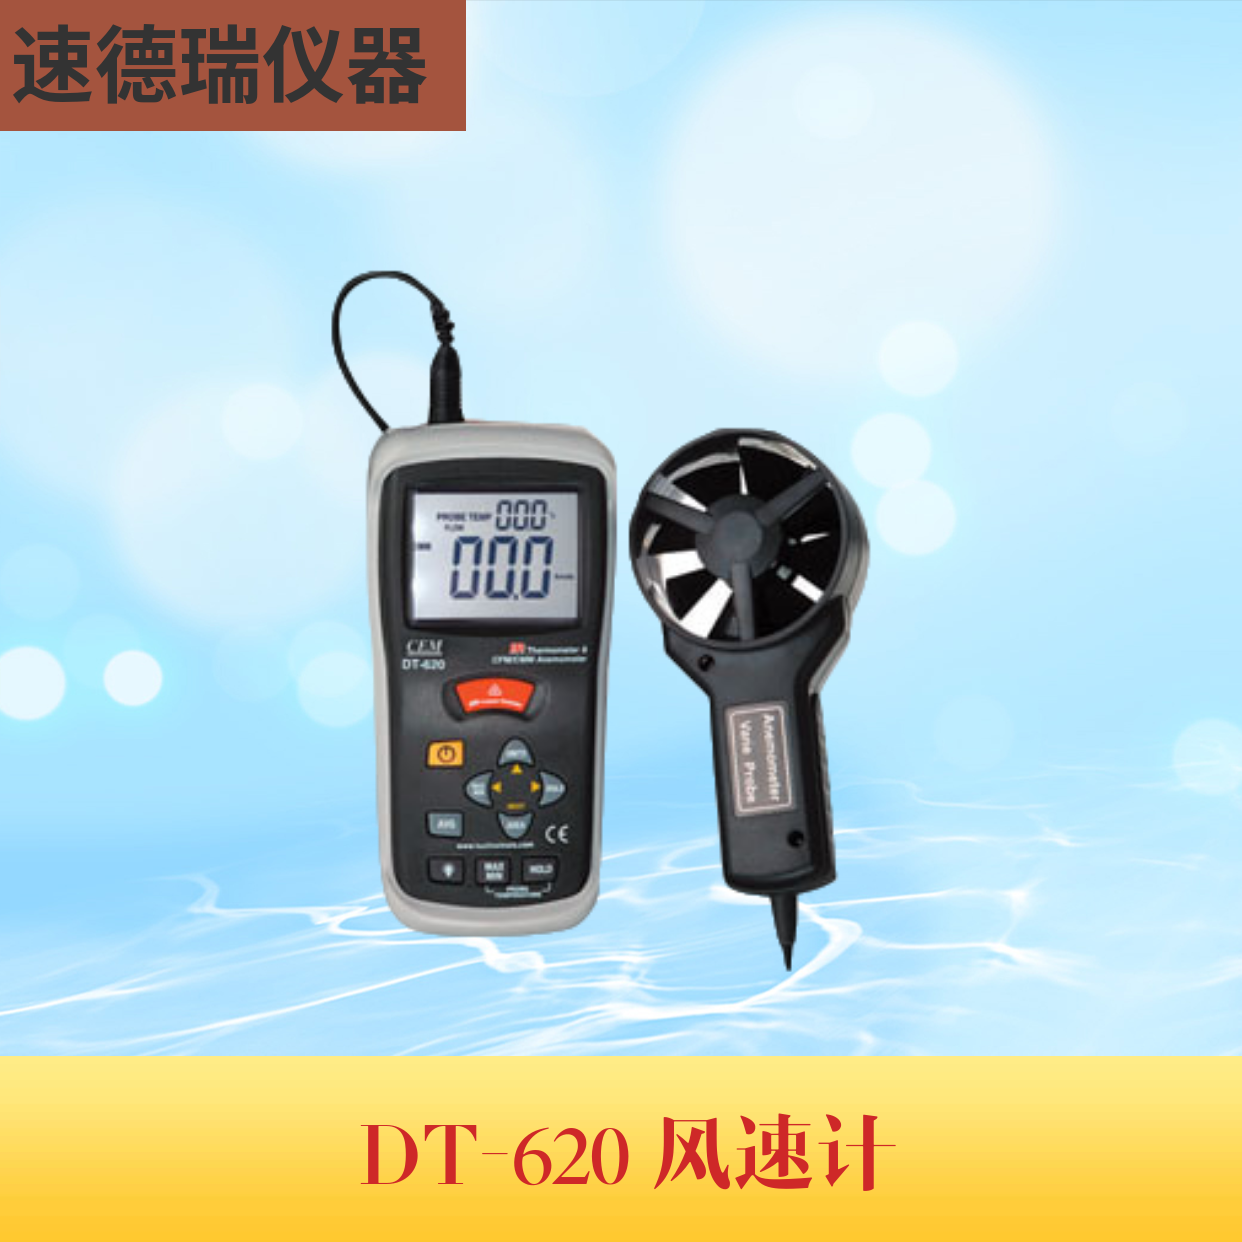 DT-620溫差式風速儀